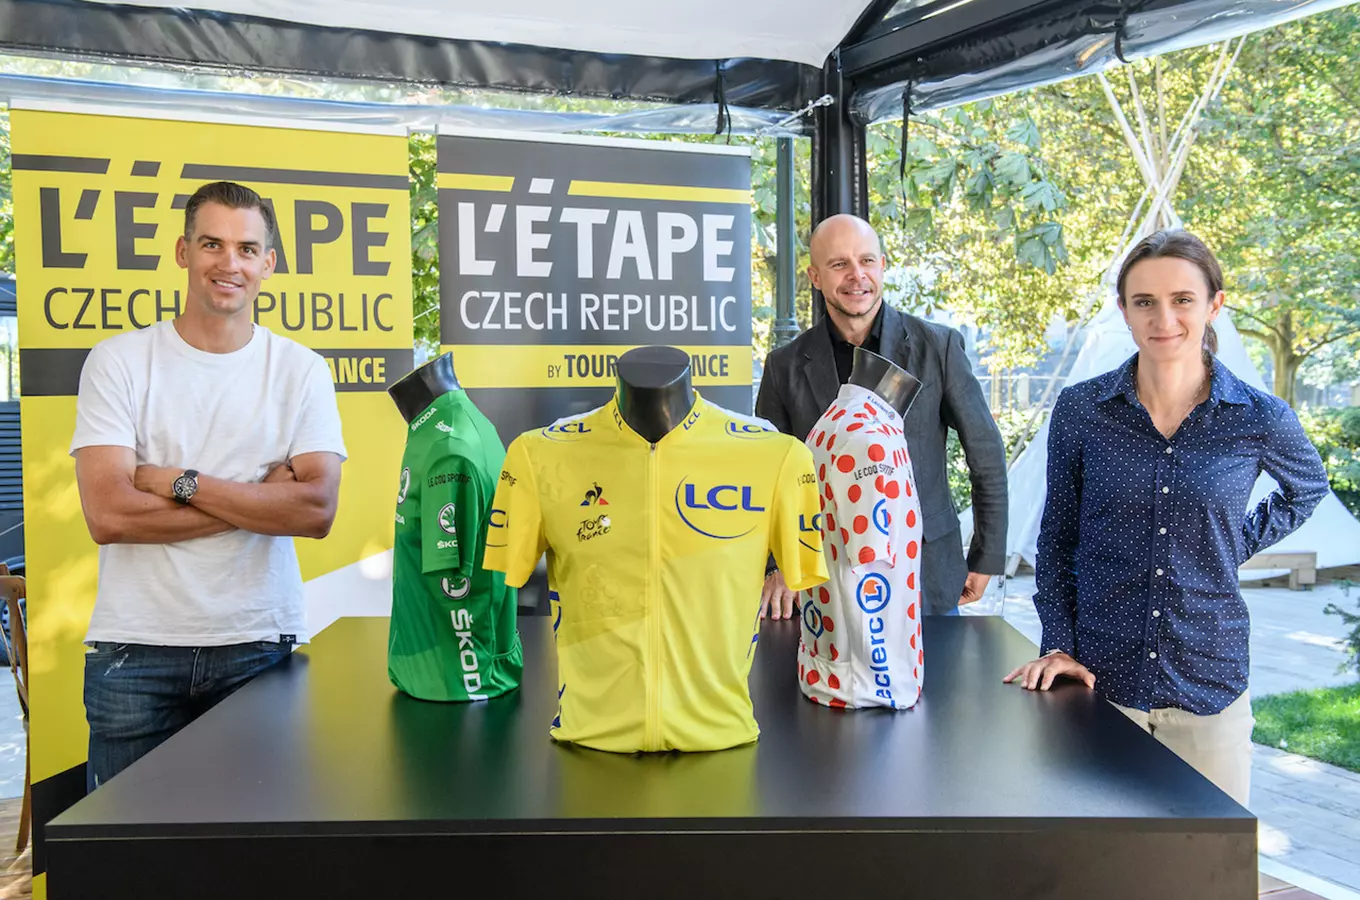 Tour de France v Česku – L’Etape Czech republic by Tour de France